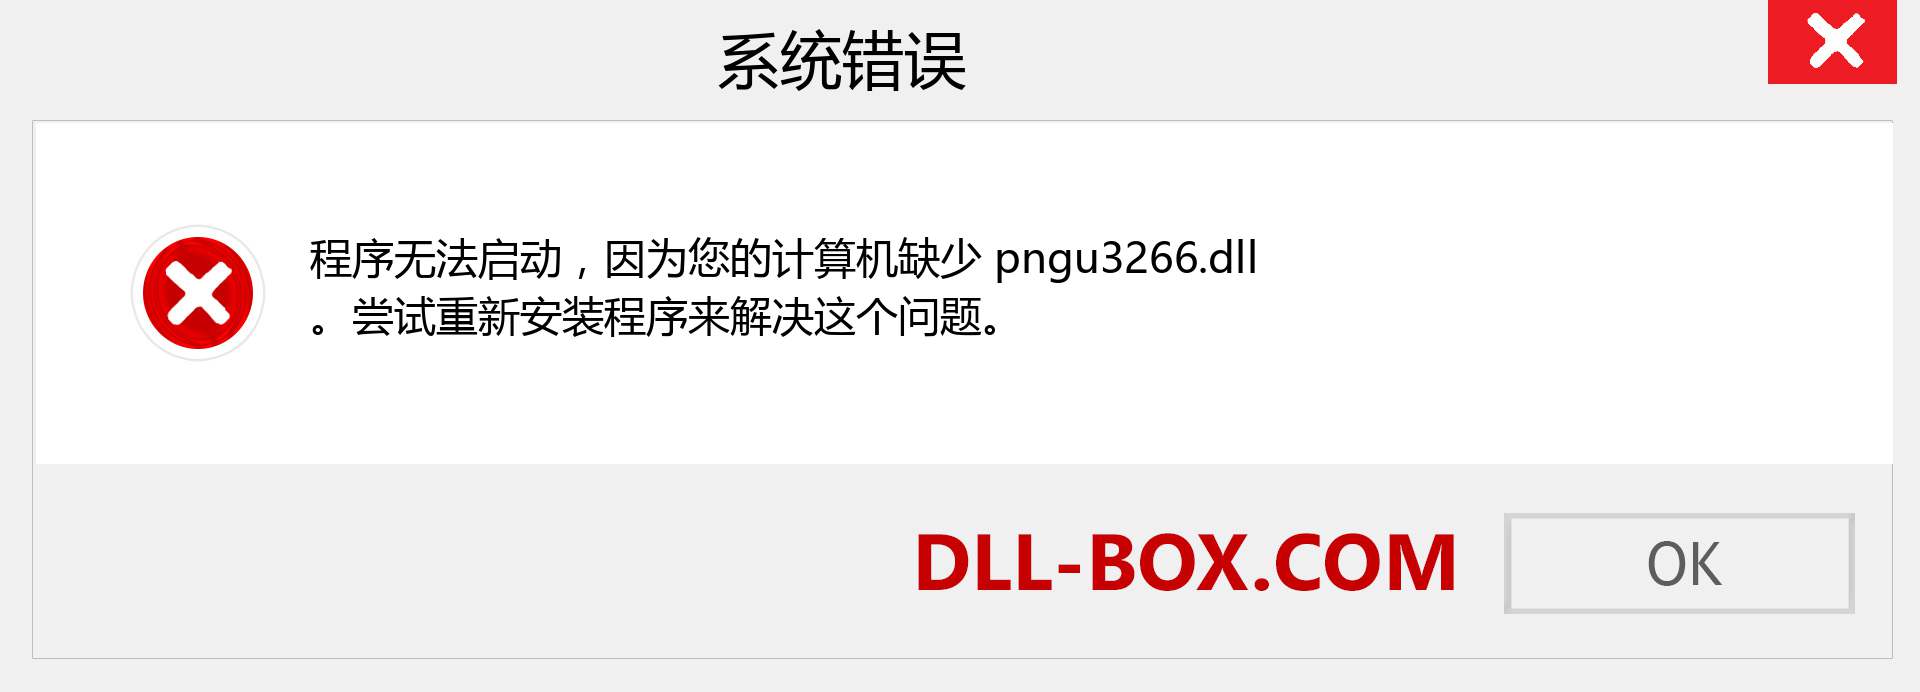 pngu3266.dll 文件丢失？。 适用于 Windows 7、8、10 的下载 - 修复 Windows、照片、图像上的 pngu3266 dll 丢失错误